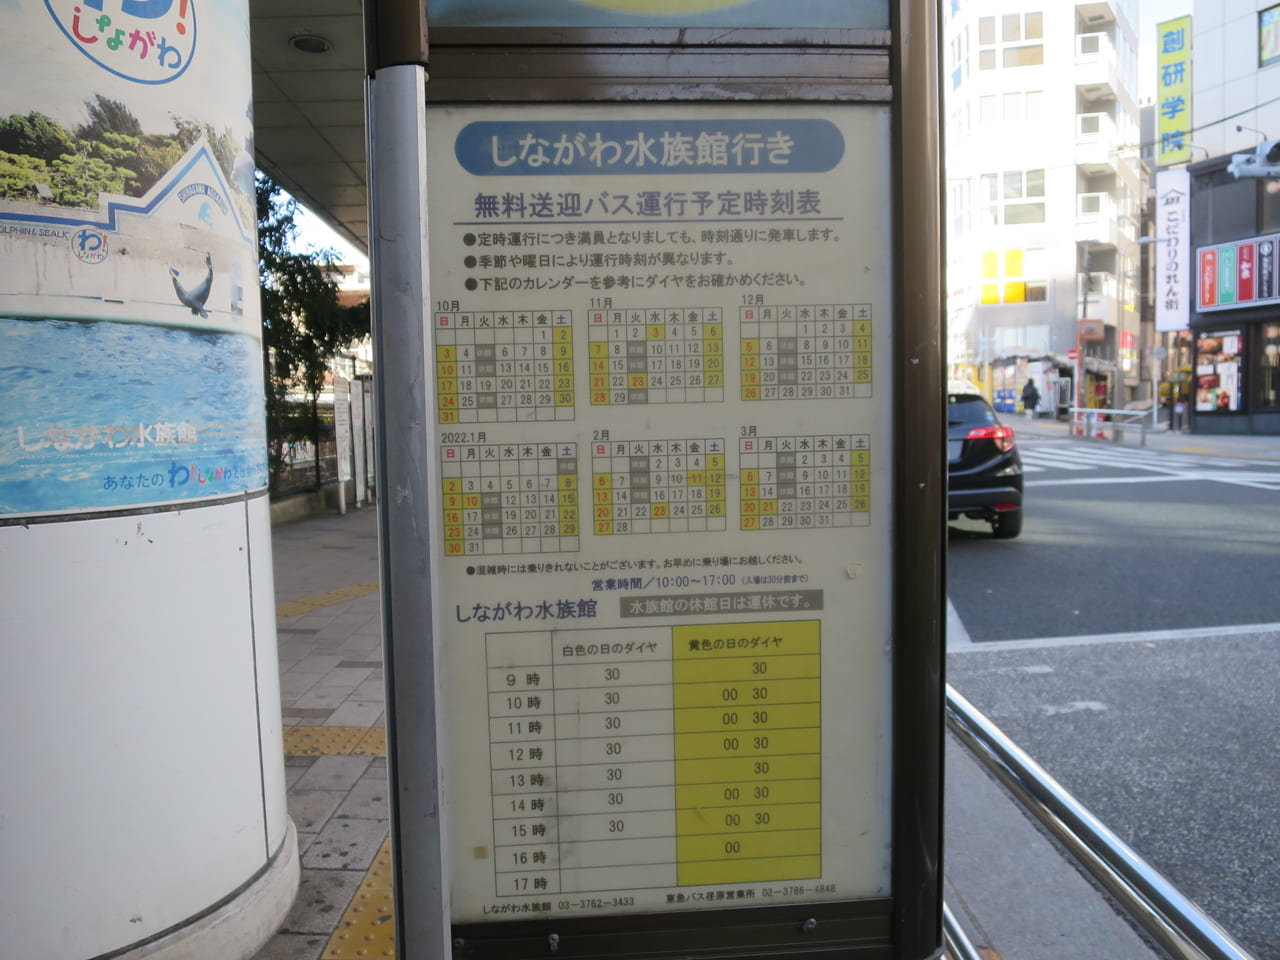 大井町駅からしながわ水族館行きのバス時刻表